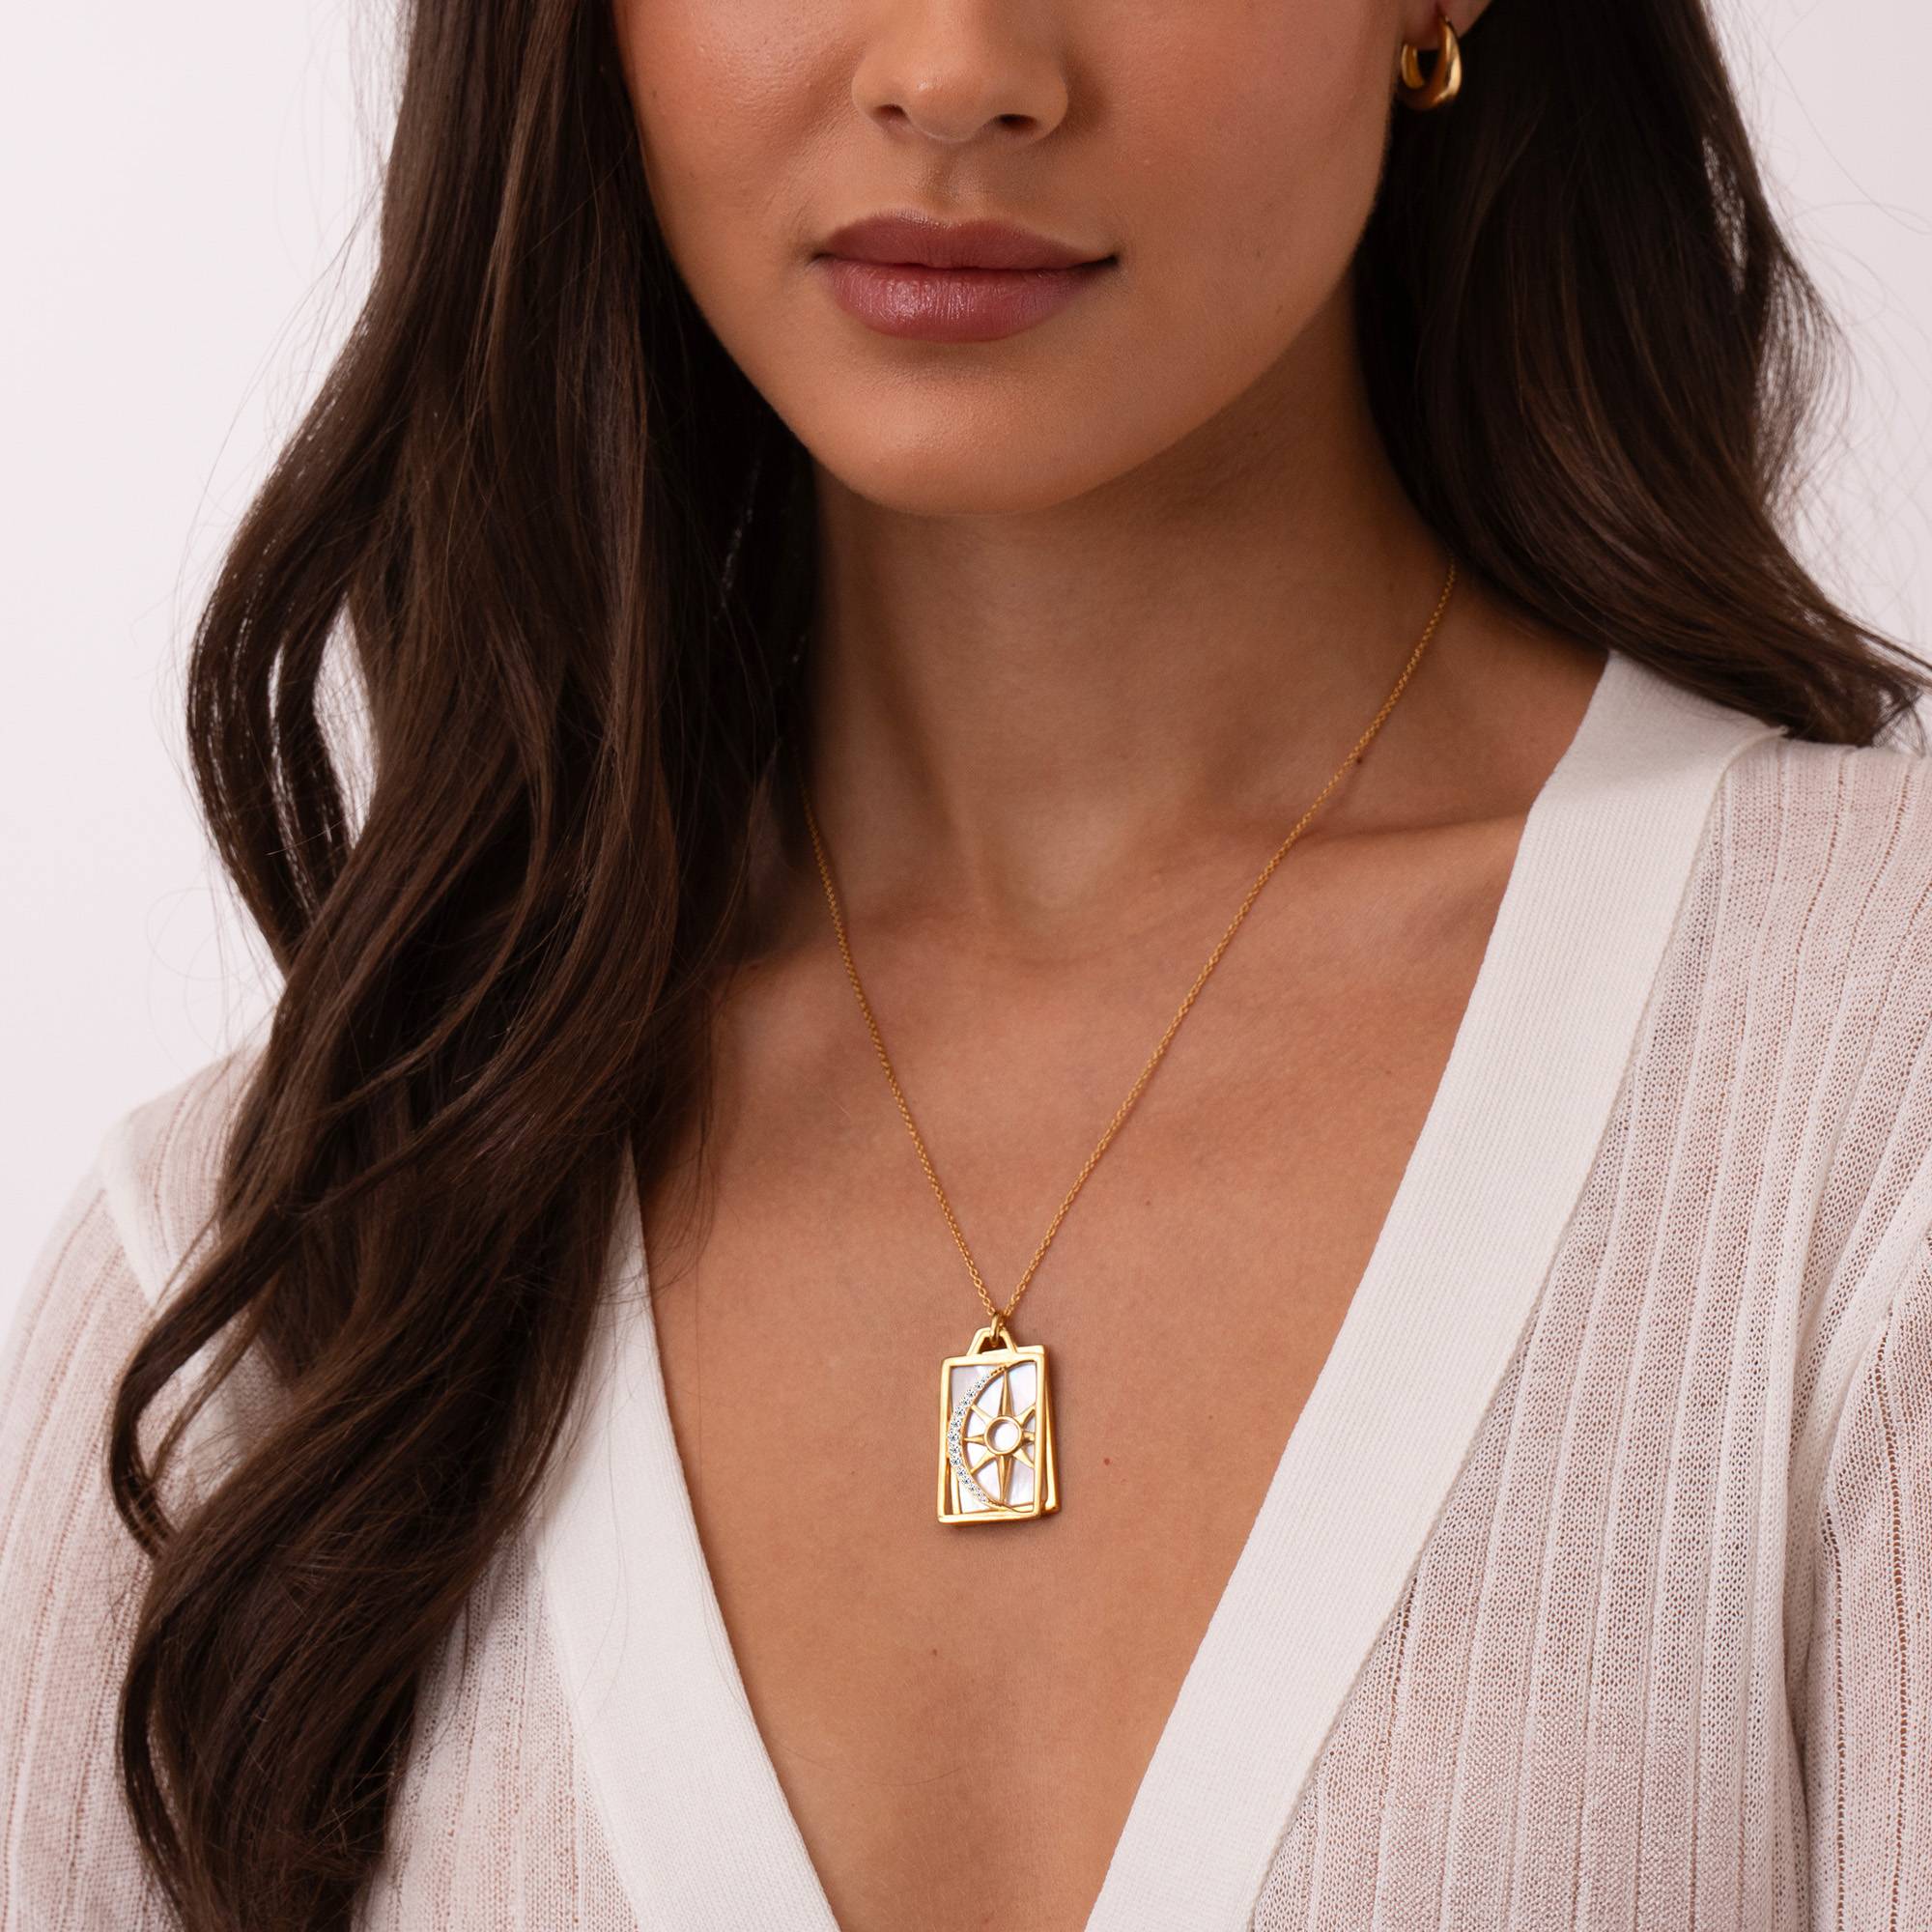 Himmlische Sonne & Mond personalisierte Halskette - 750er vergoldetes Silber-4 Produktfoto